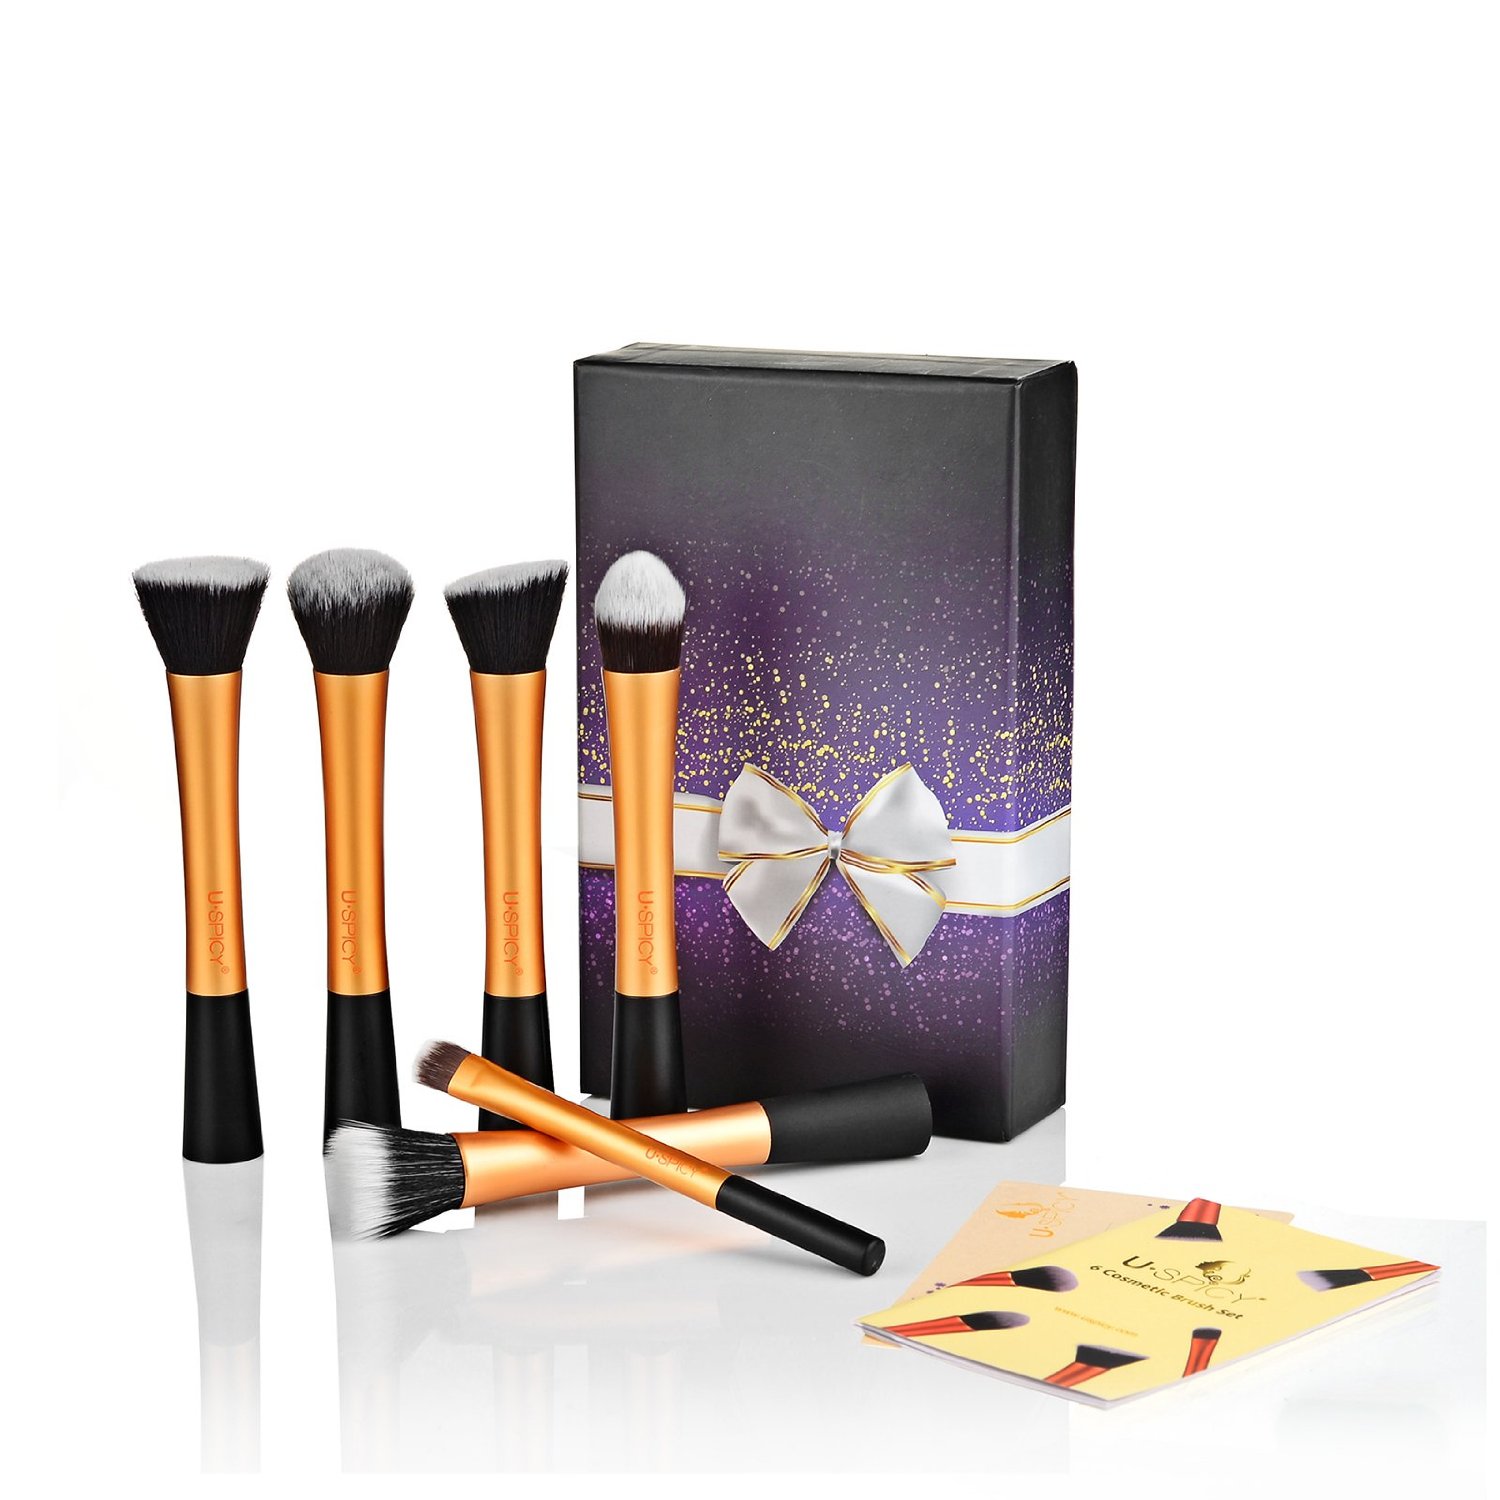 Order makeup brush sets online